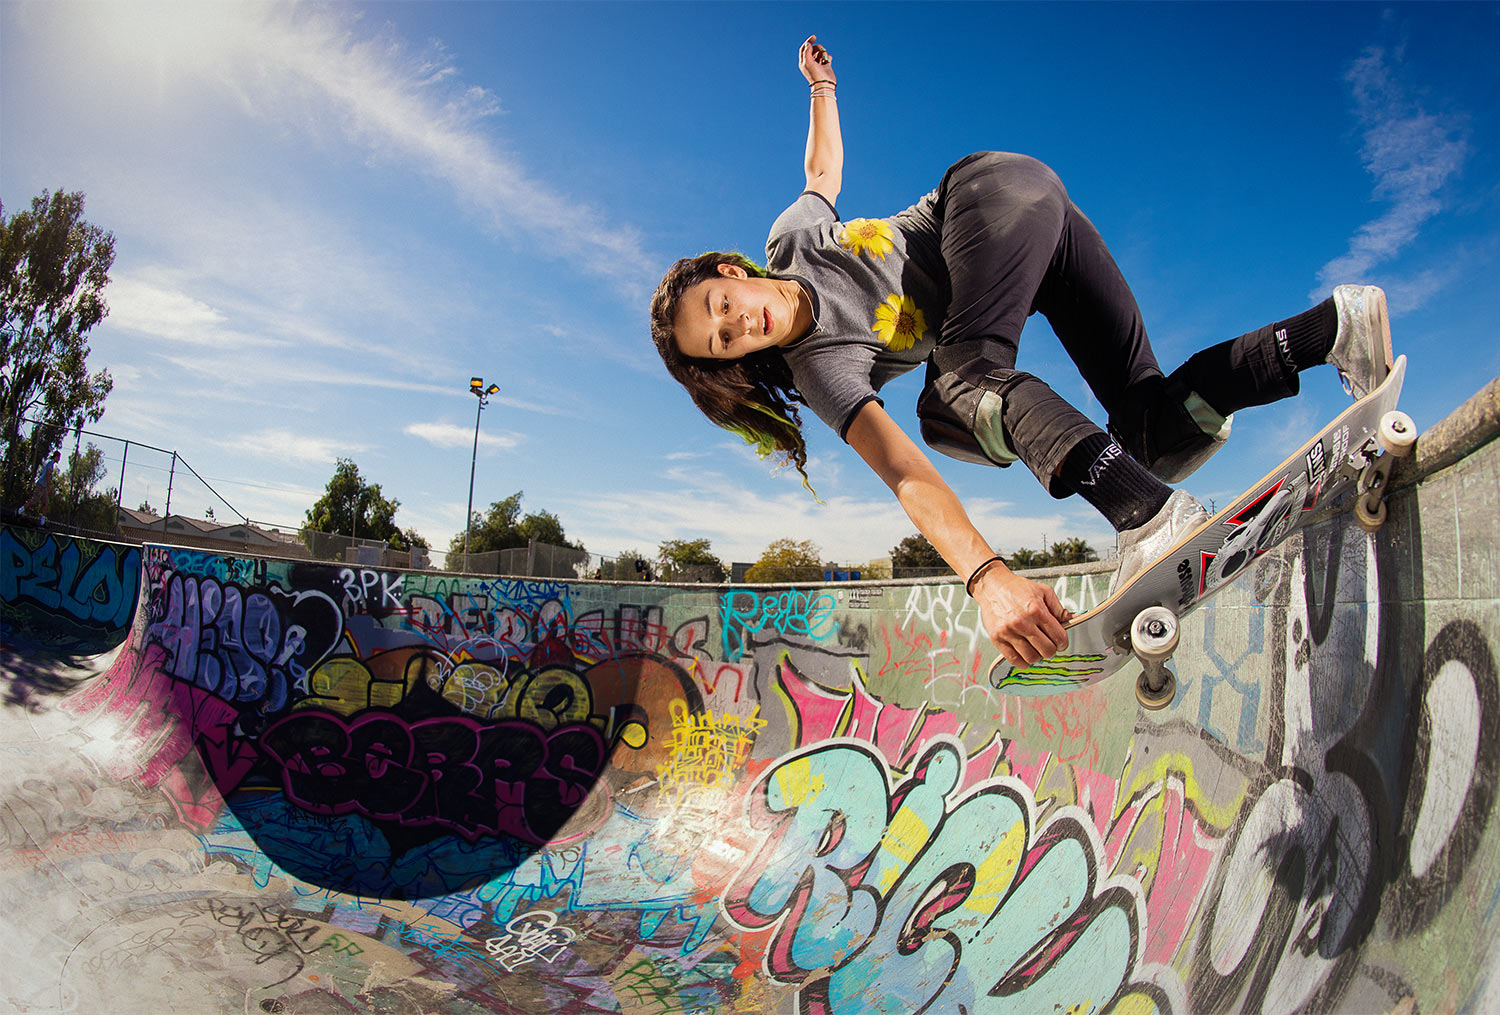 lizzie armanto skateboarder